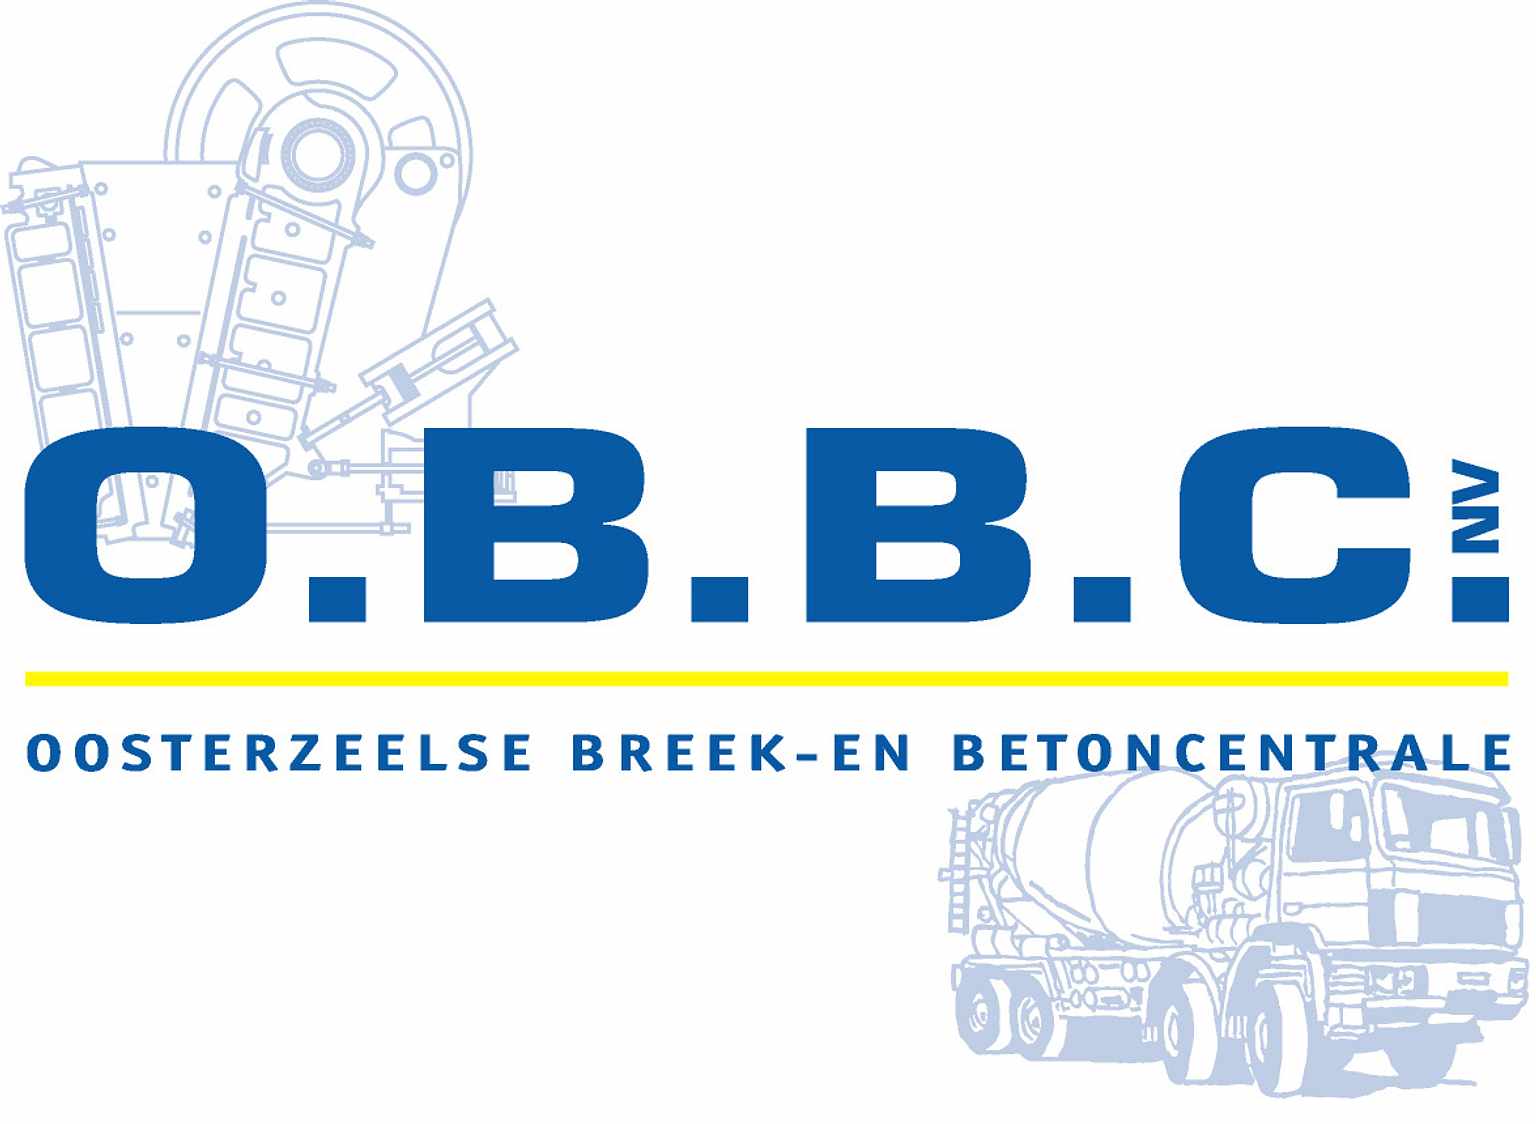 Oosterzeelse breek-en betoncentrale OBBC